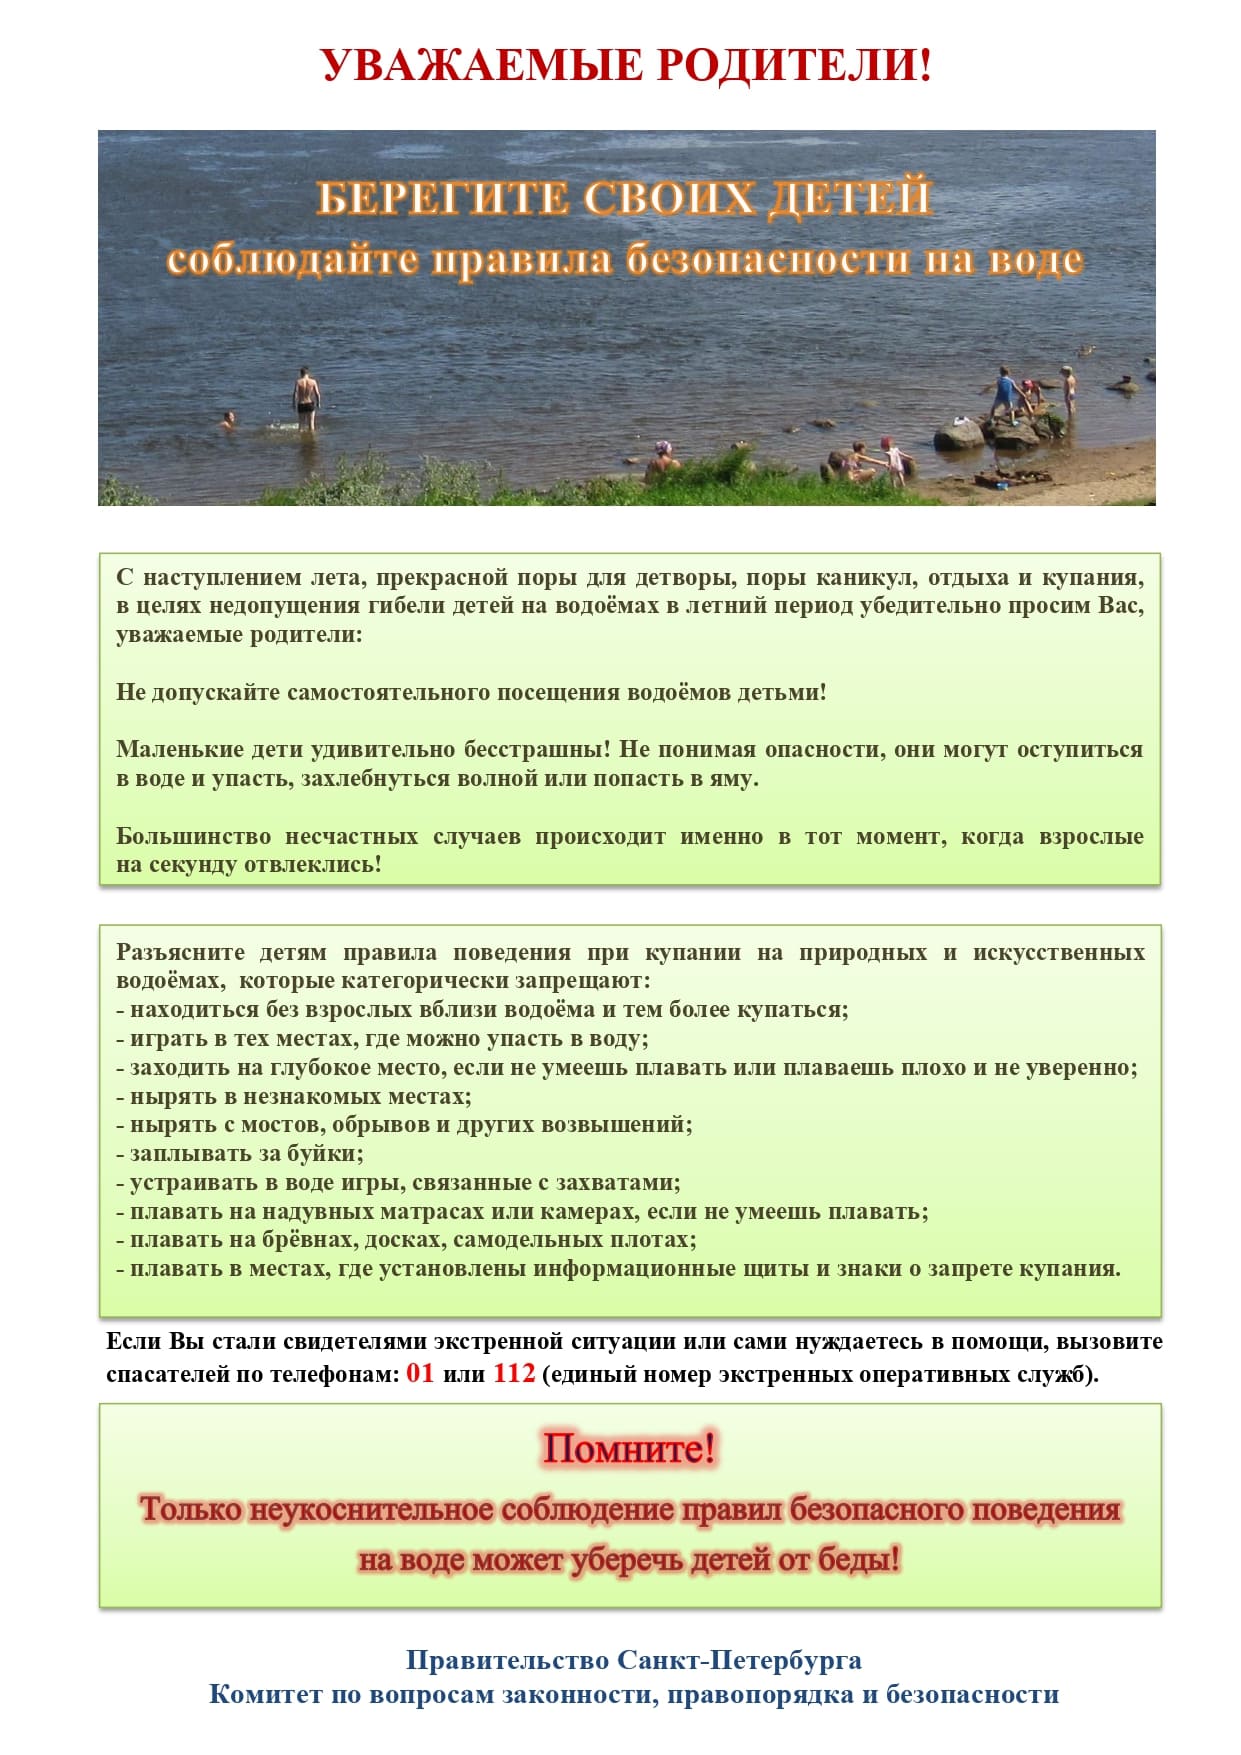 Памятка родителям по запрету купания в неотведенных местах 2021 page 0001 1 1